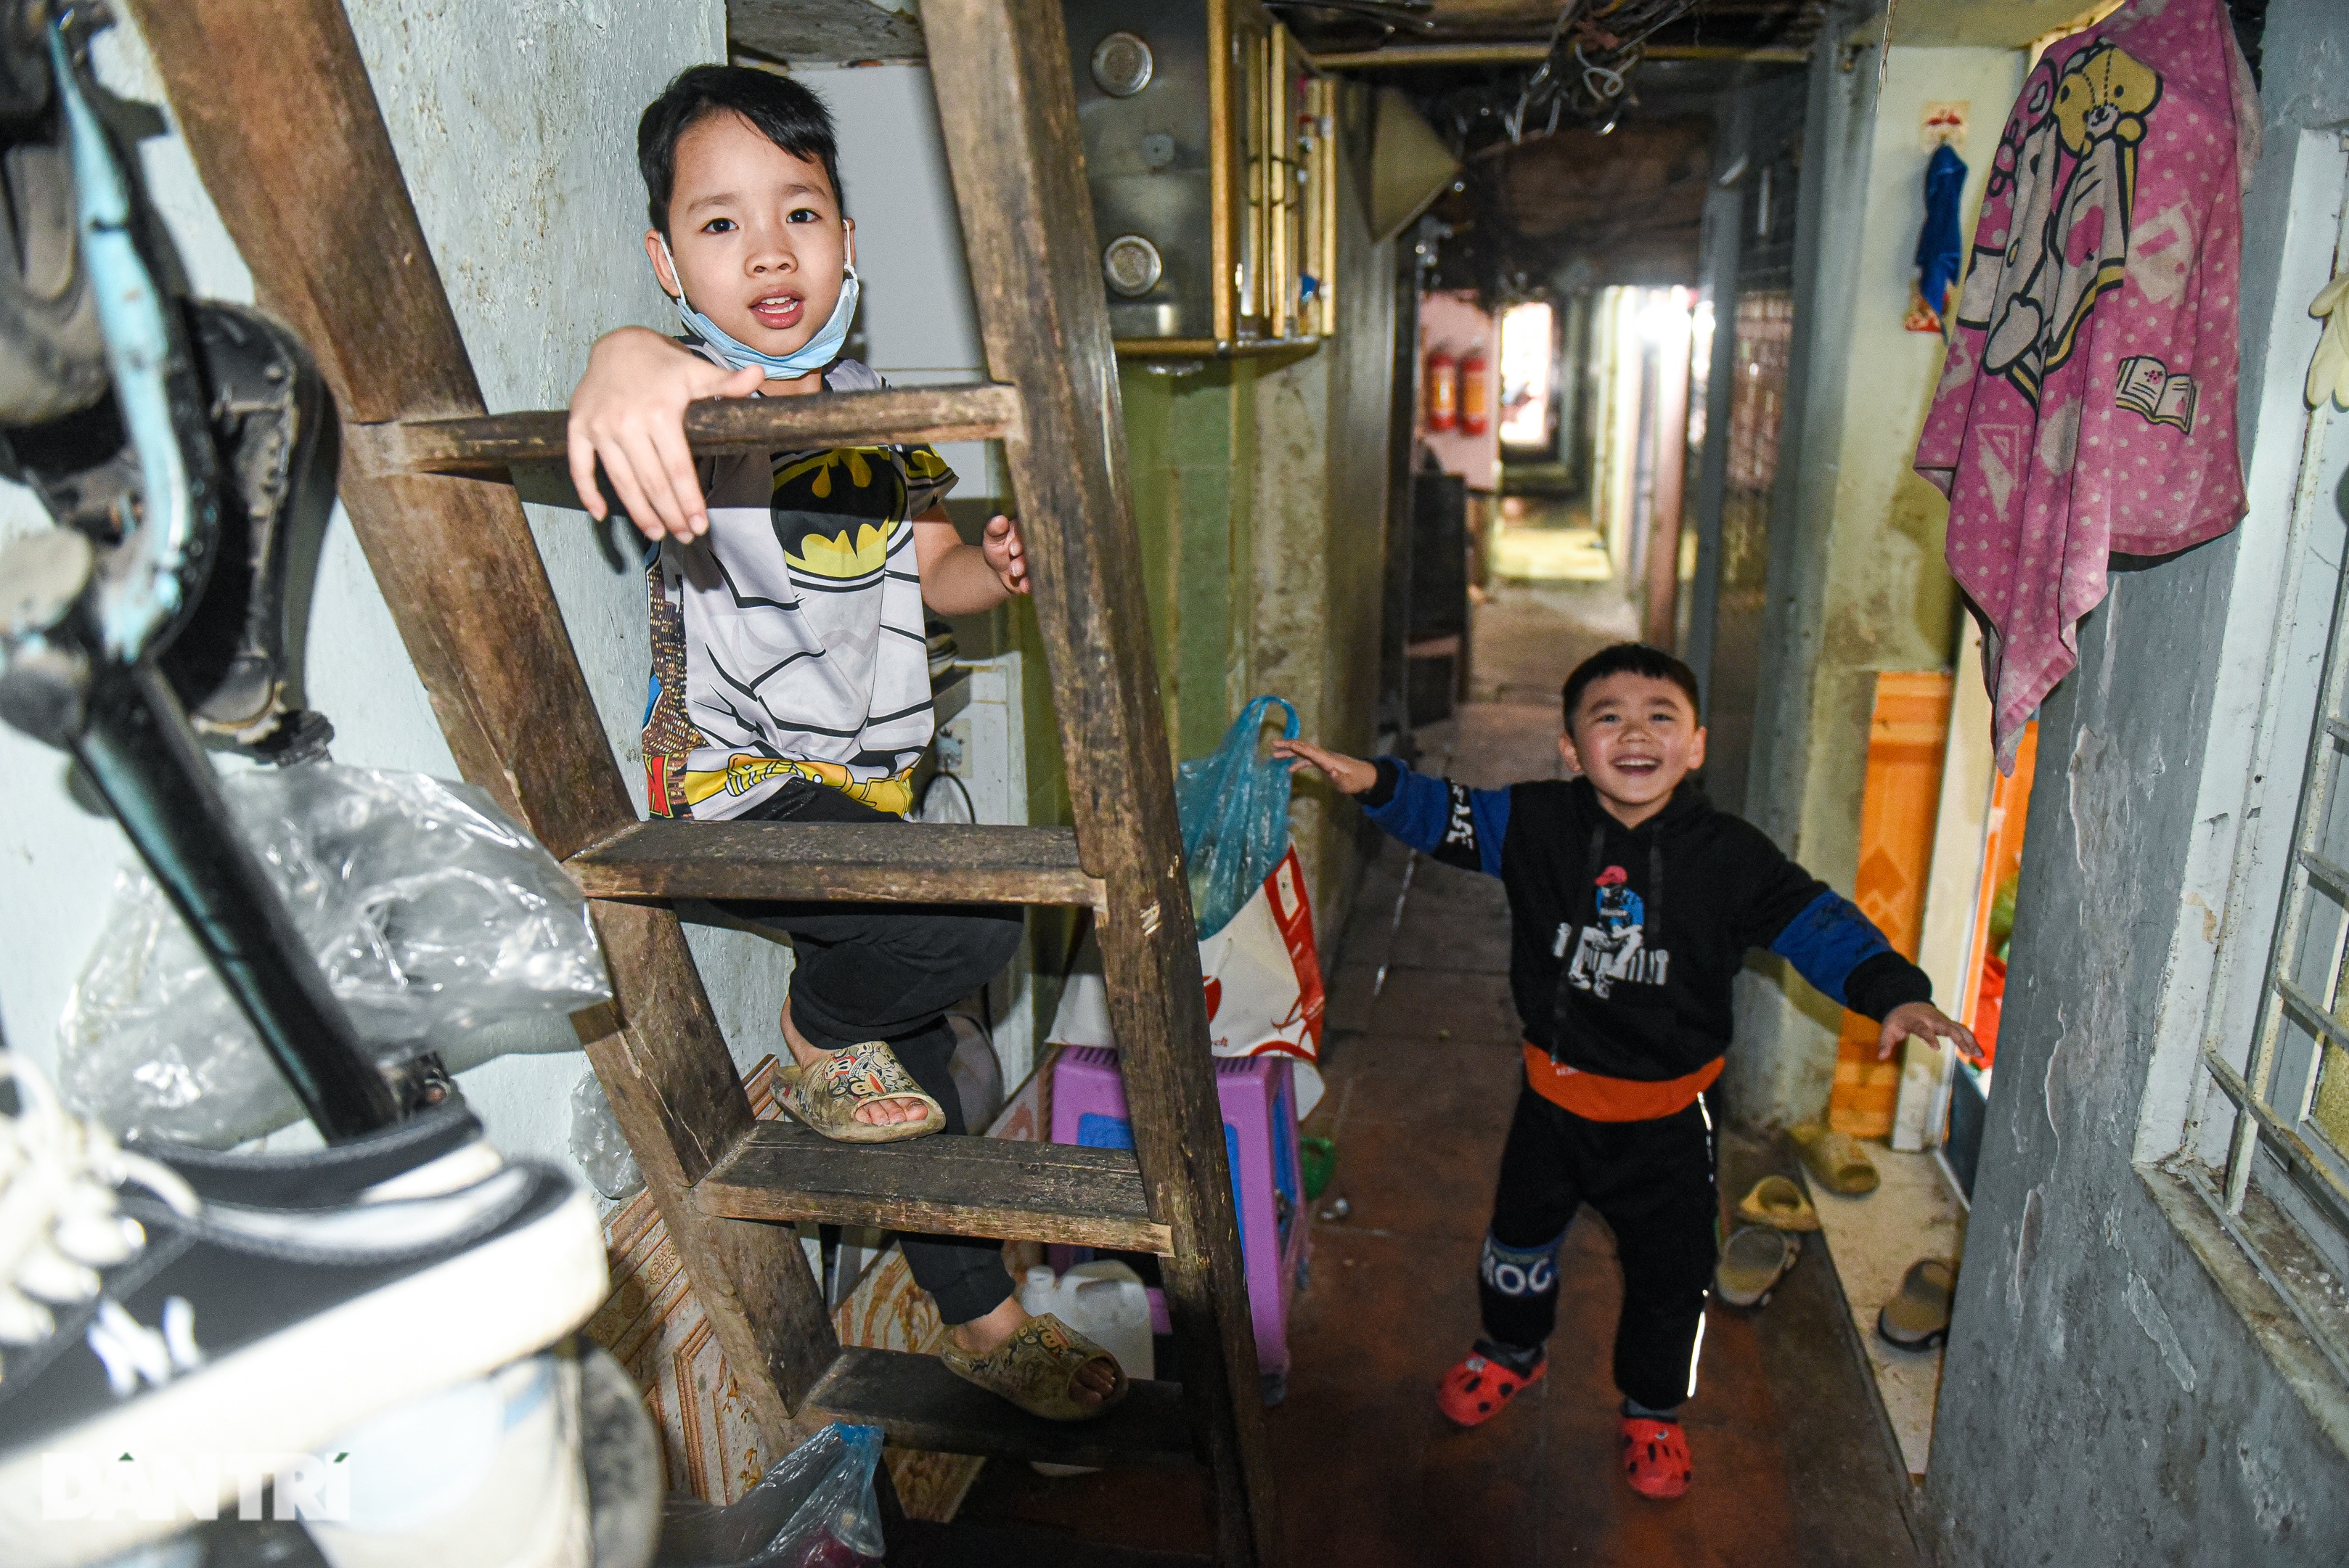 Ngõ lạ ở Hà Nội: Đám hỏi không tráp, người mất không đóng áo quan - 4